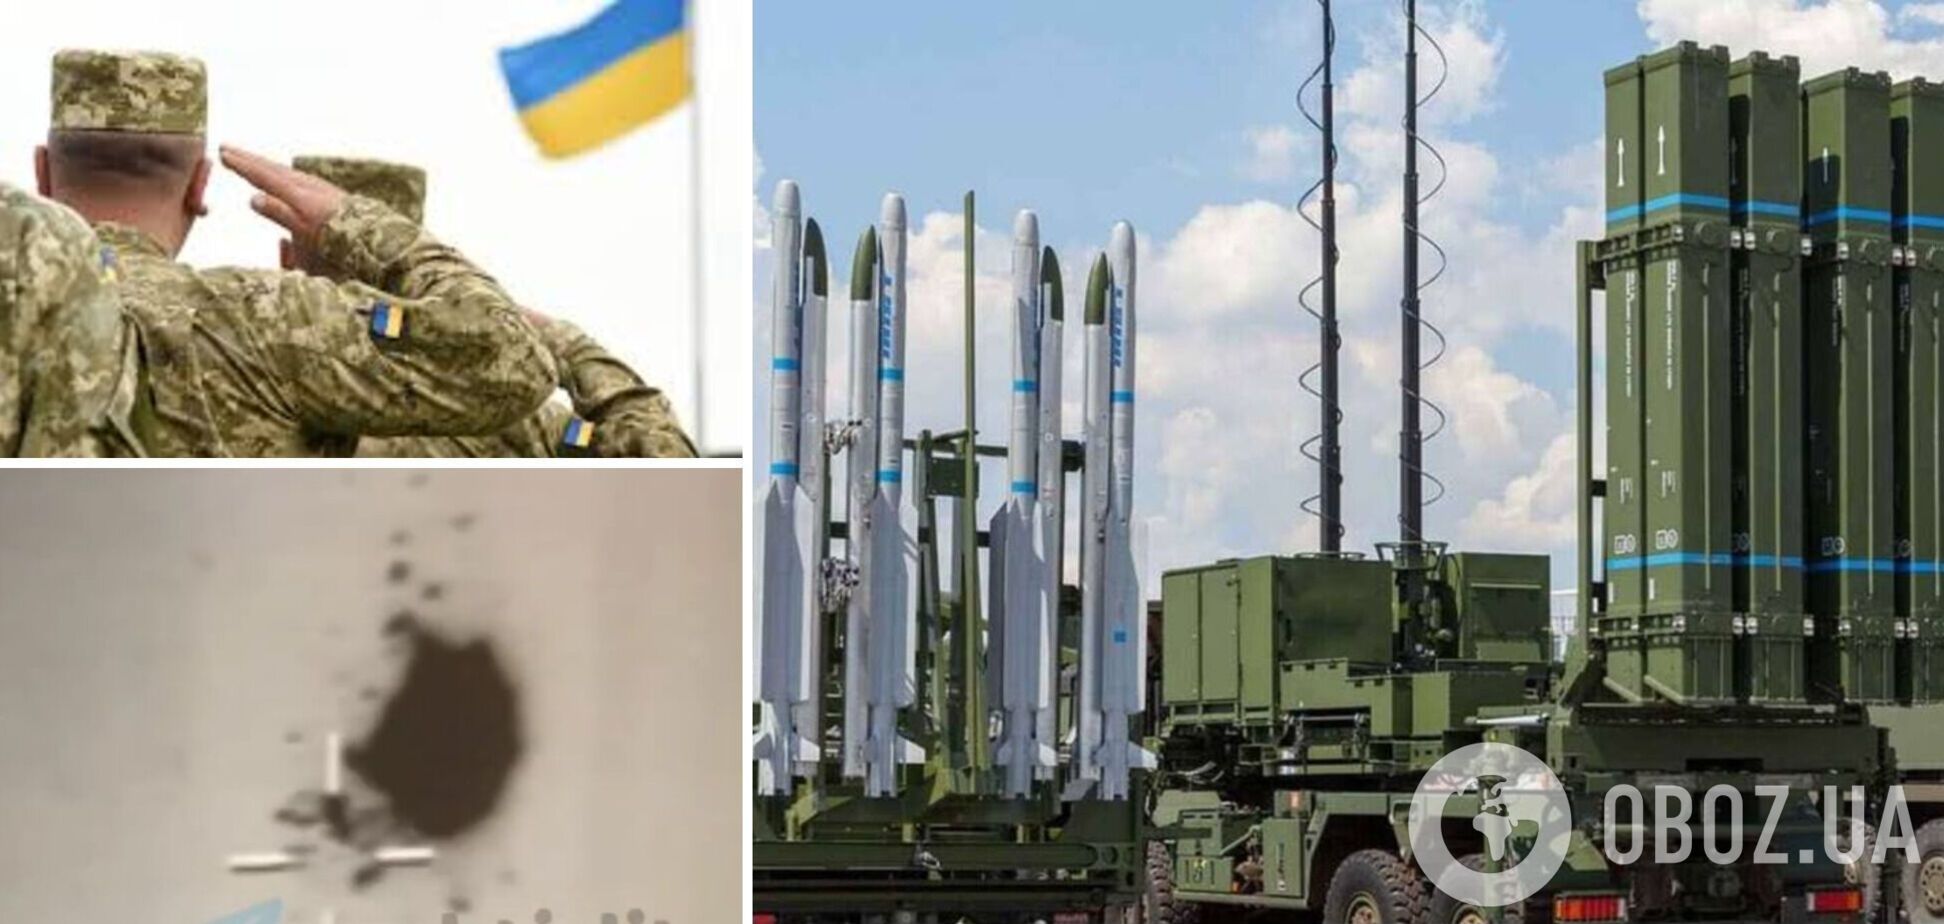 Цель уничтожена! В сети показали видео удачной работы украинских воинов ПВО